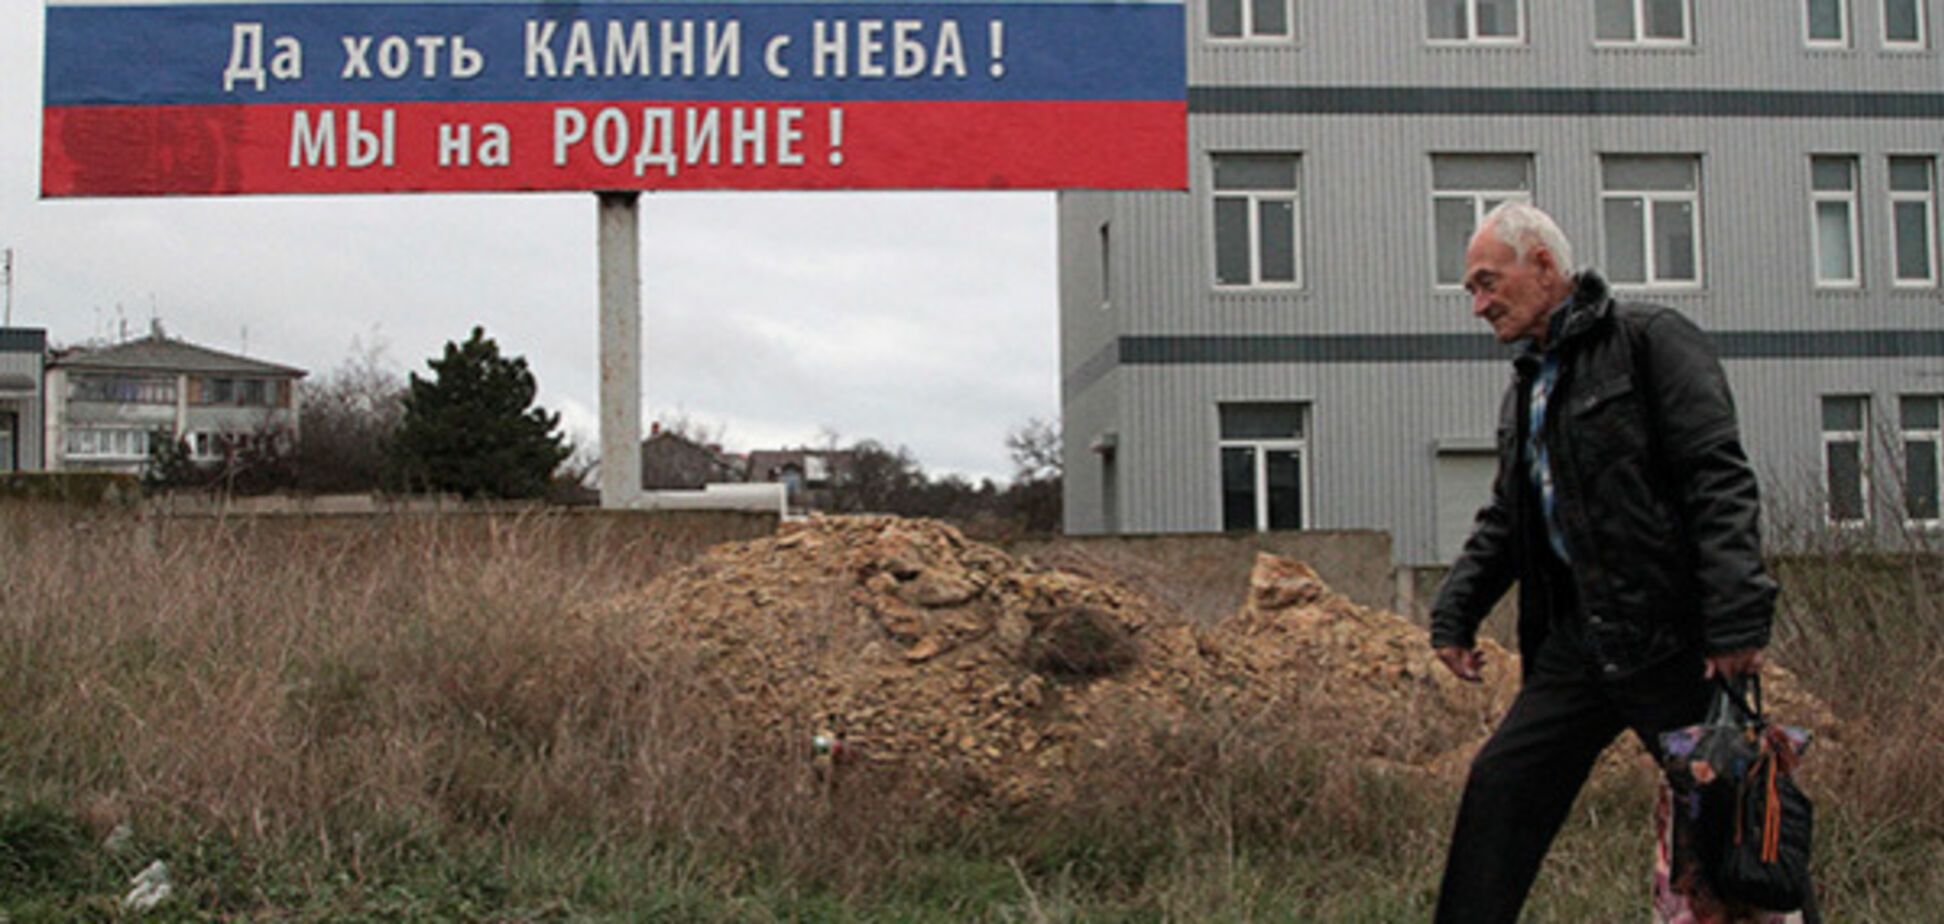 'З роботою сумно': оприлюднені дані про зарплати в окупованому Криму